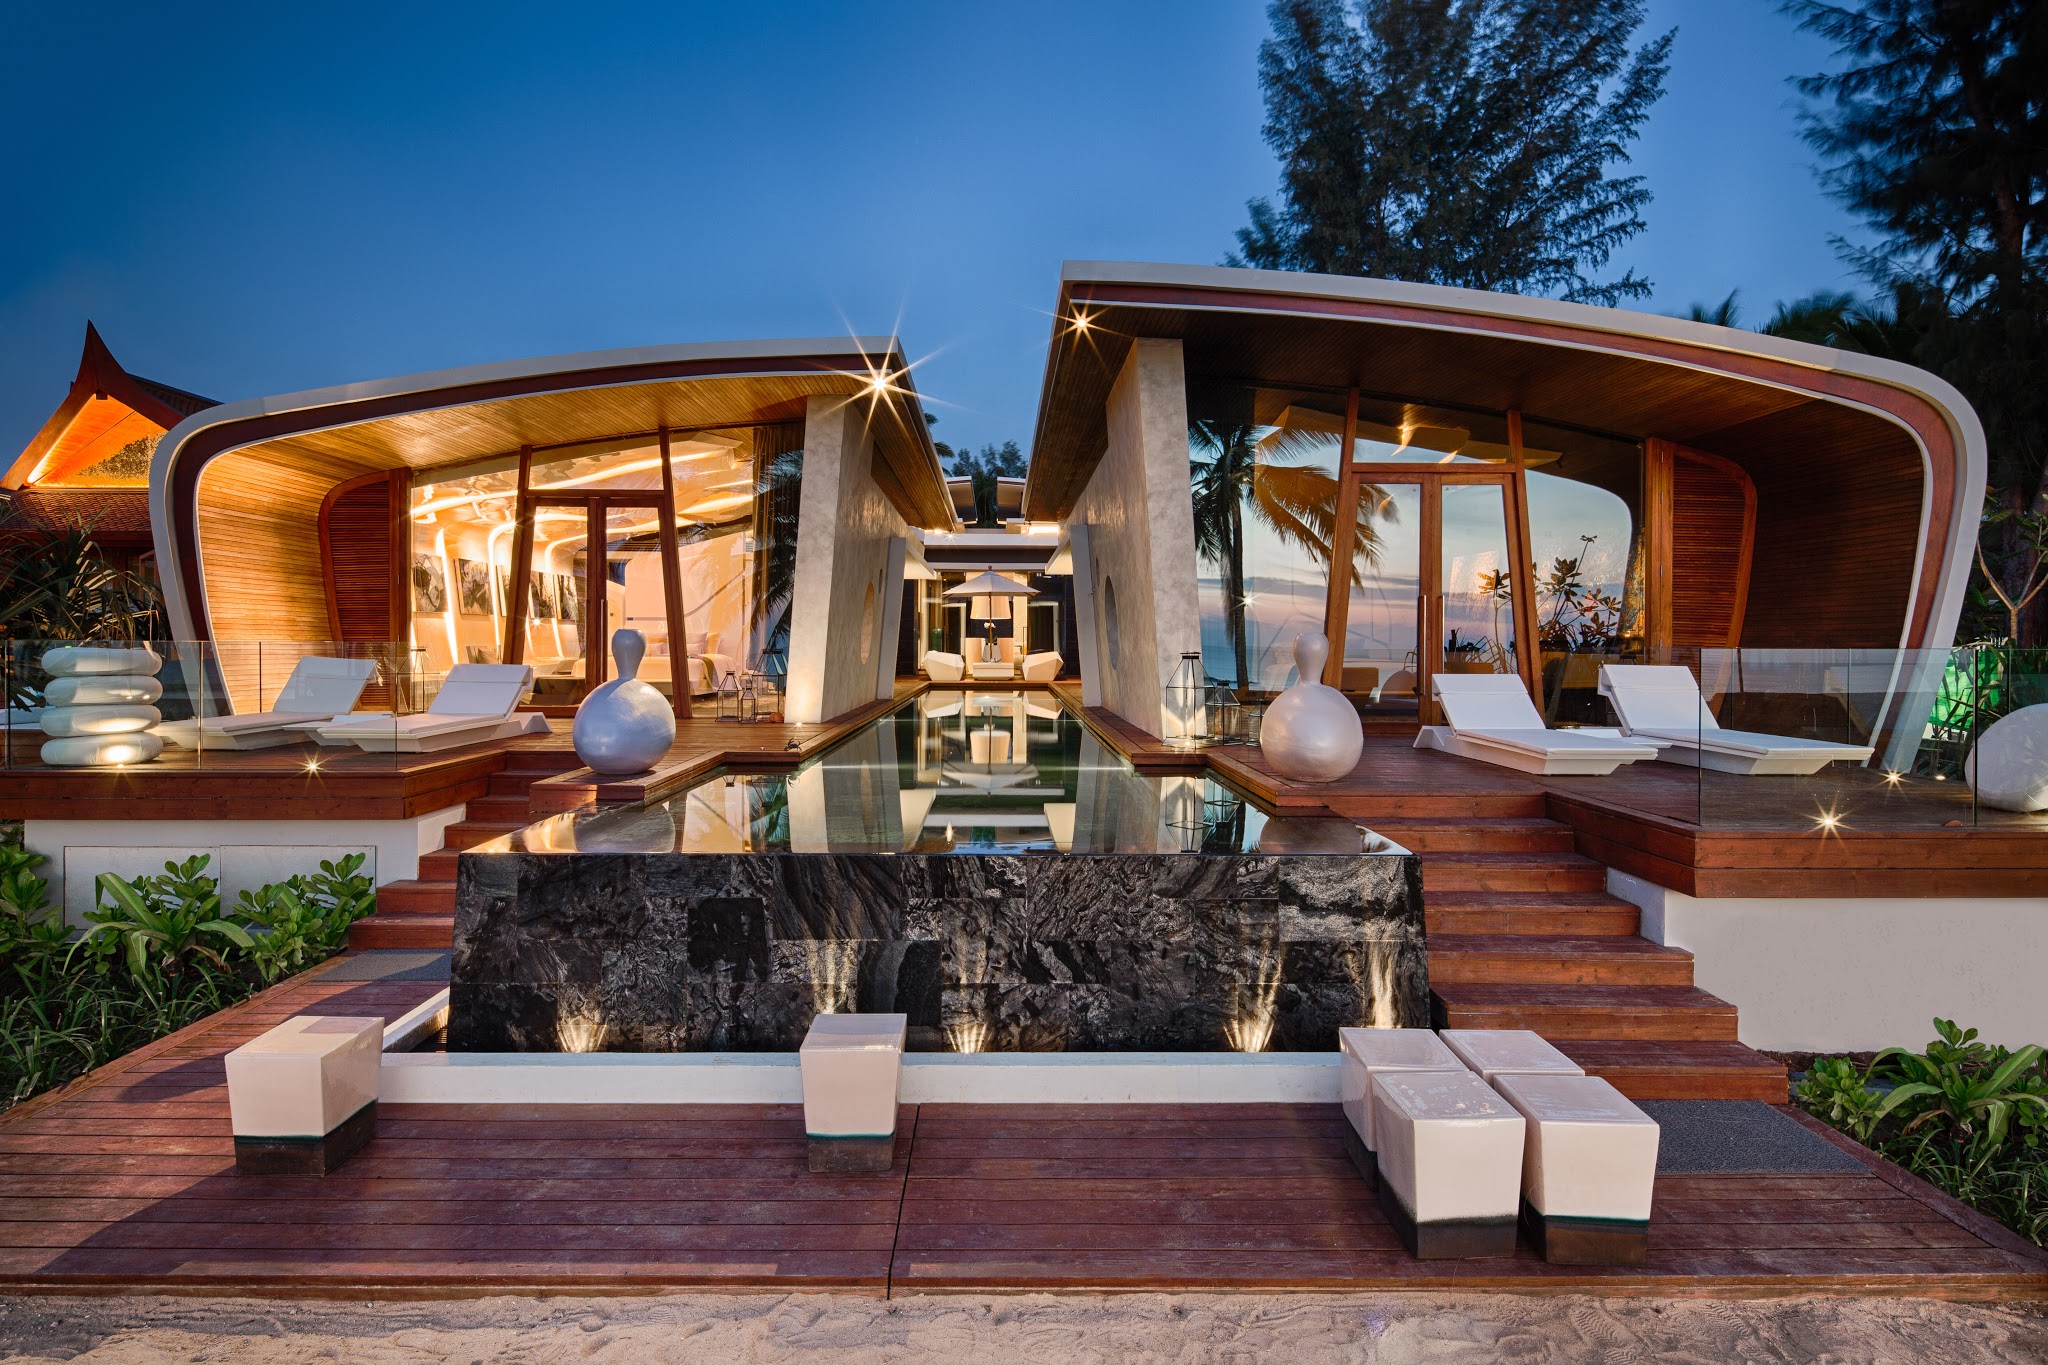 Ultramodern Iniala Luxury Beach House by A-cero